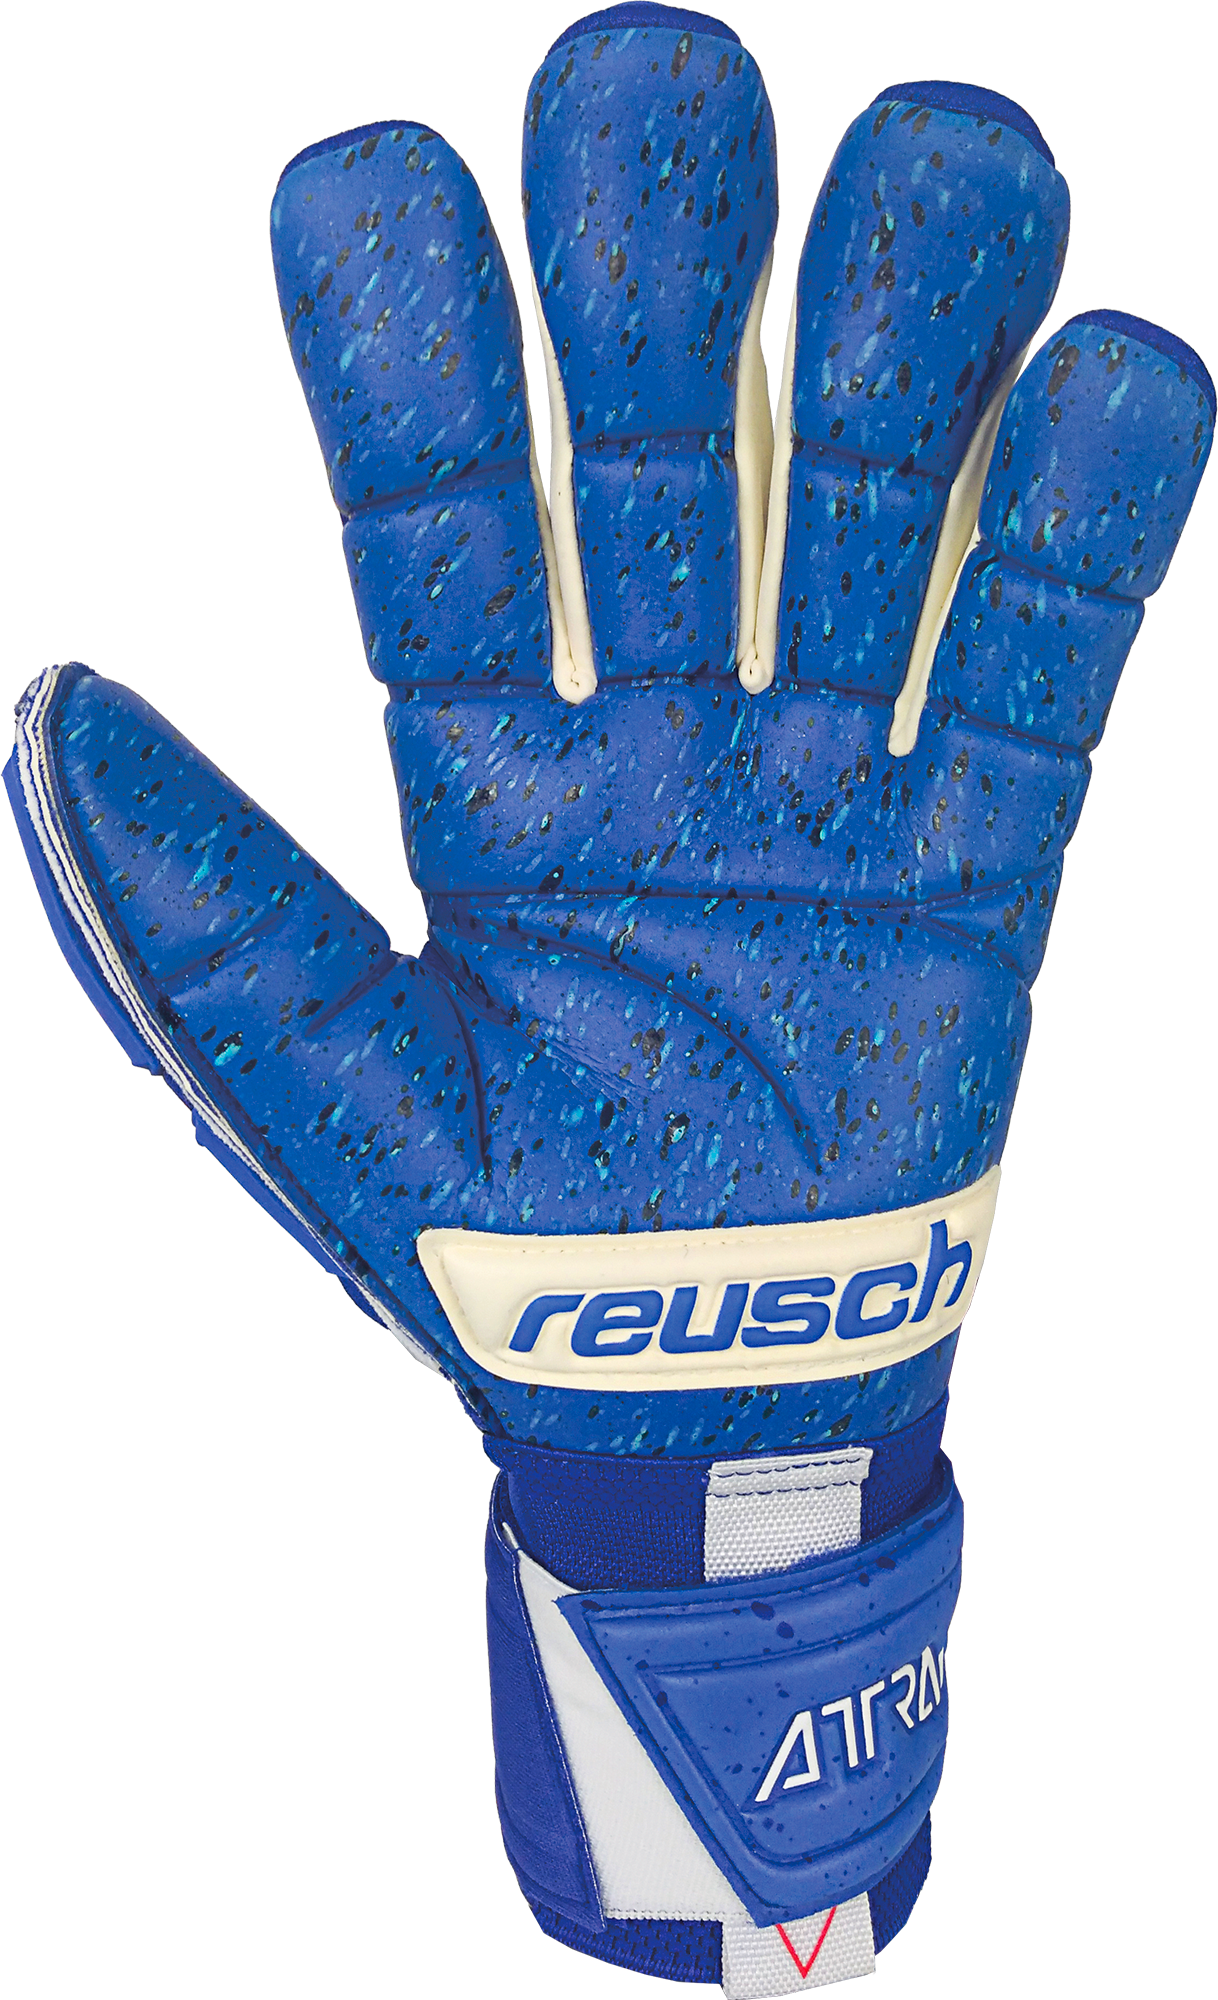 Fusion Soccer Goalkeeper Zone 5170995 – Blue Gloves Freegel Goaliator Attrakt Reusch